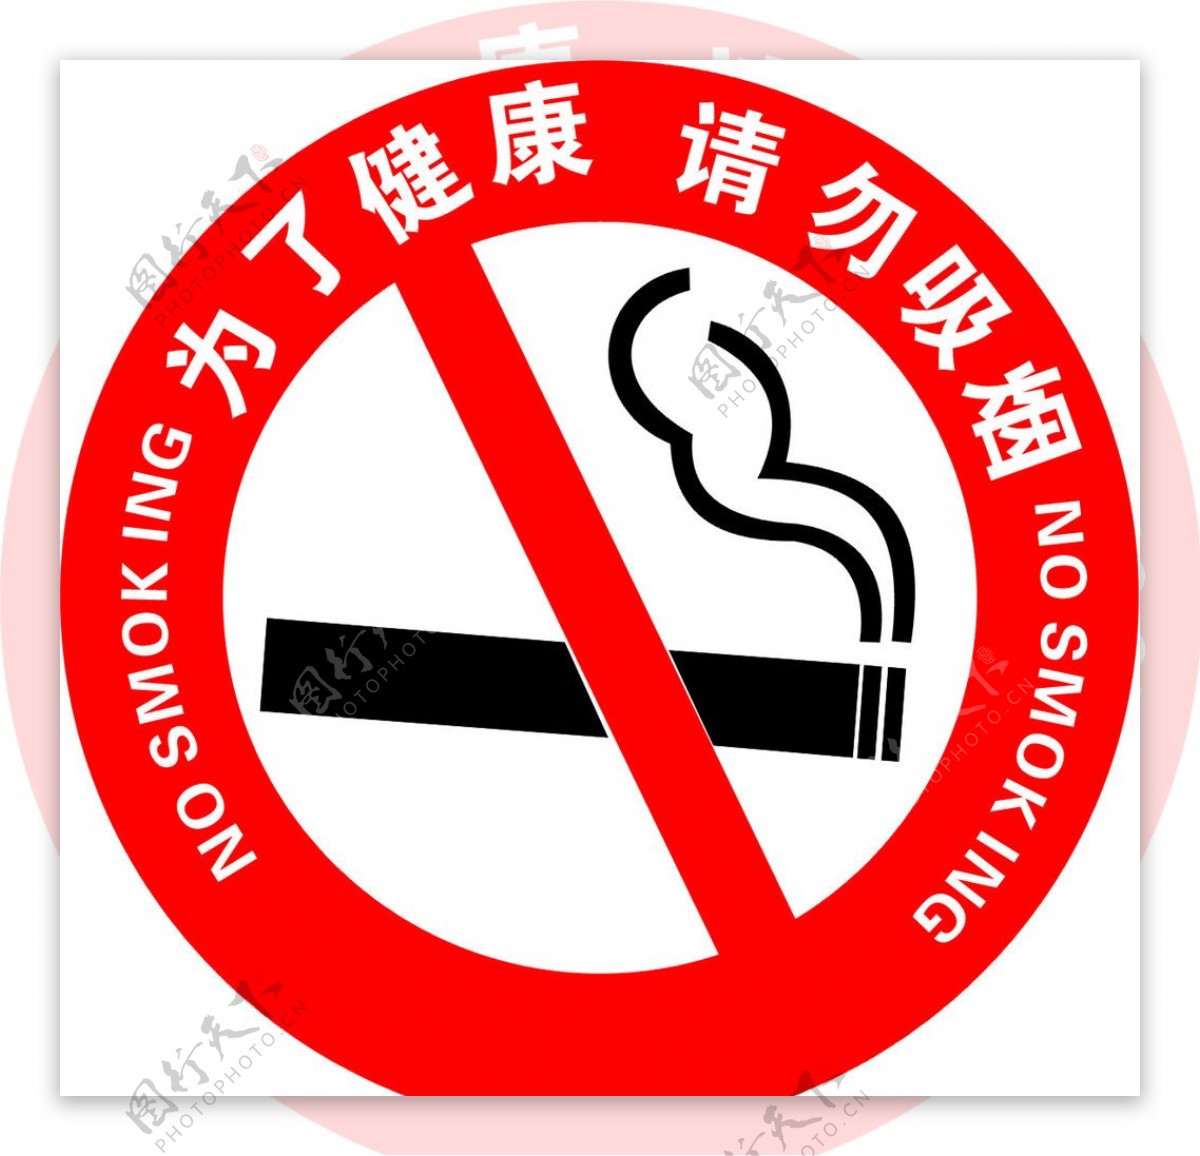 请勿吸烟标识图片